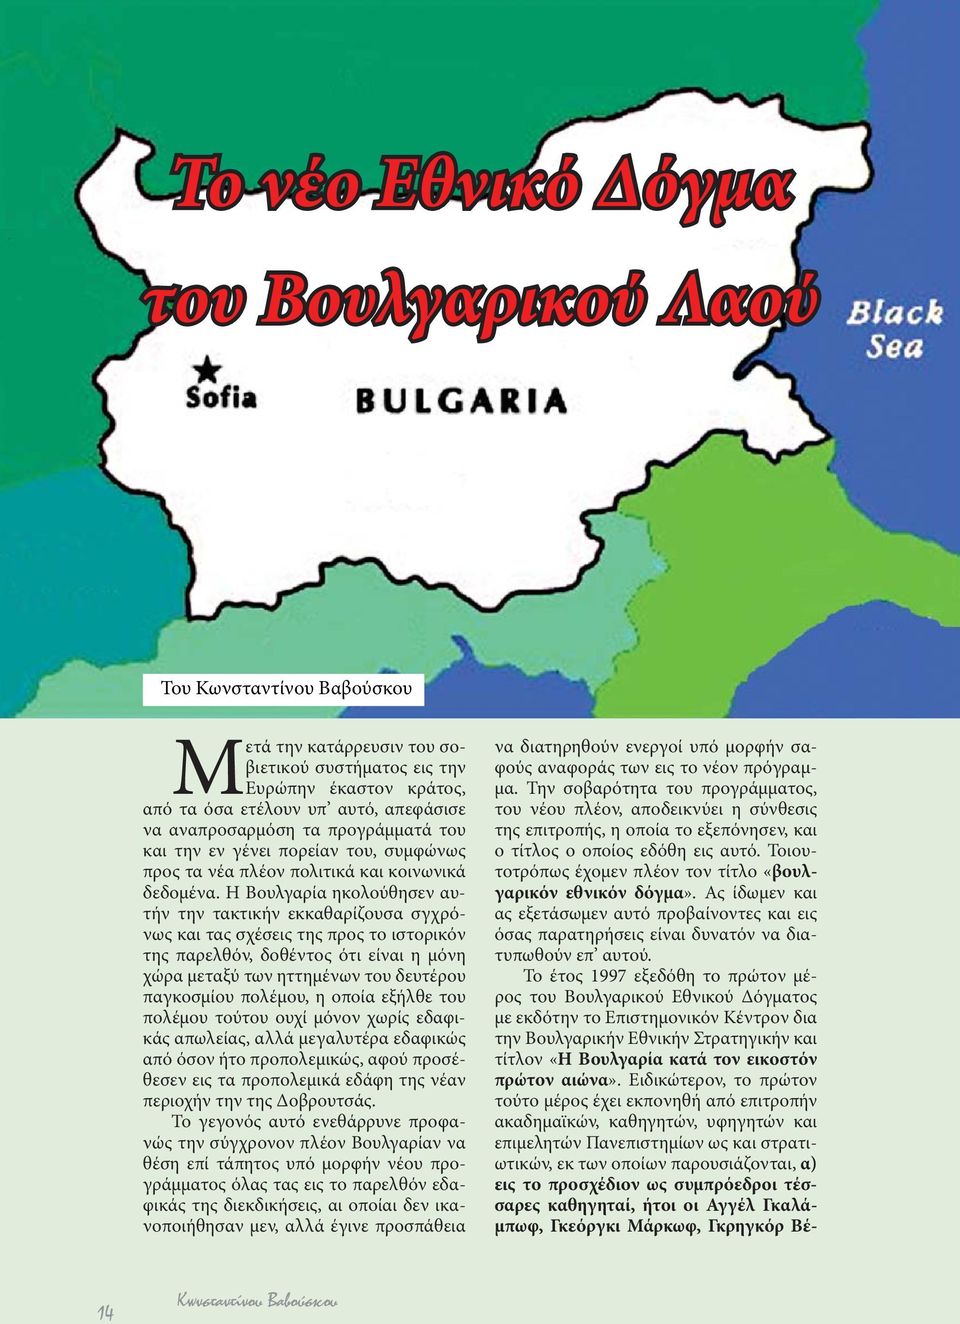 Η Βουλγαρία ηκολούθησεν αυτήν την τακτικήν εκκαθαρίζουσα σγχρόνως και τας σχέσεις της προς το ιστορικόν της παρελθόν, δοθέντος ότι είναι η μόνη χώρα μεταξύ των ηττημένων του δευτέρου παγκοσμίου